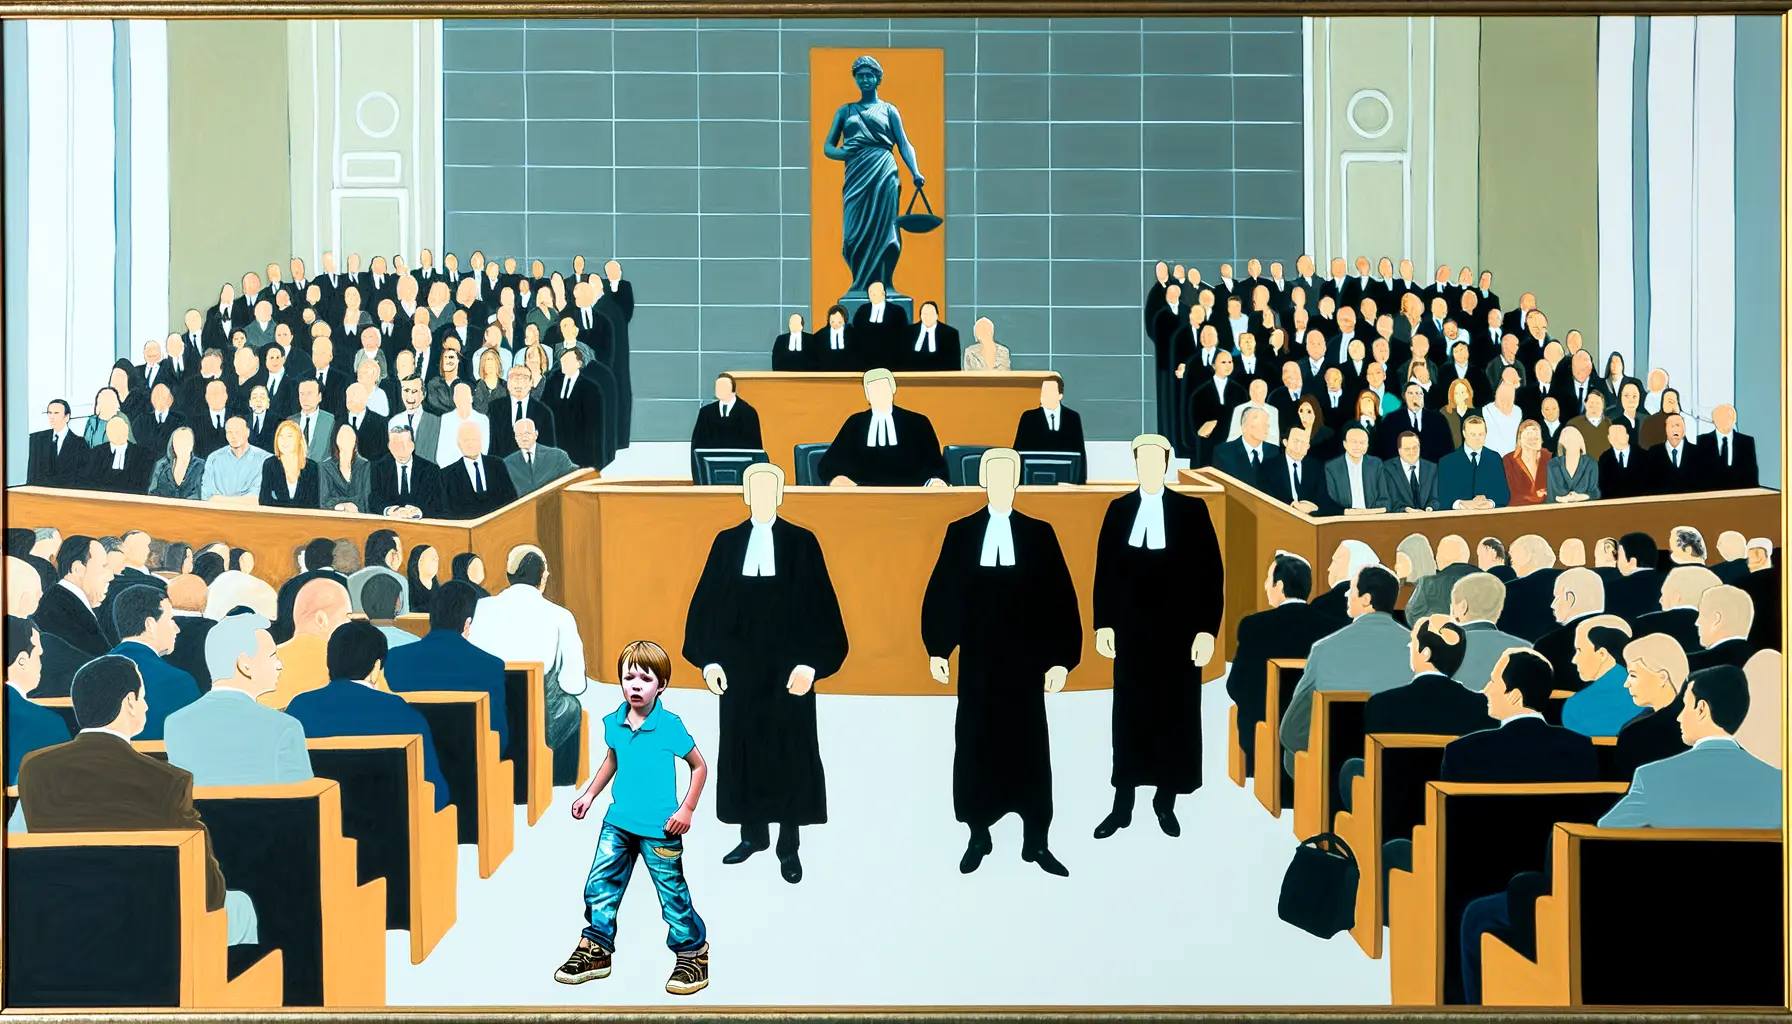 Künstlerische Darstellung eines Gerichtssaals